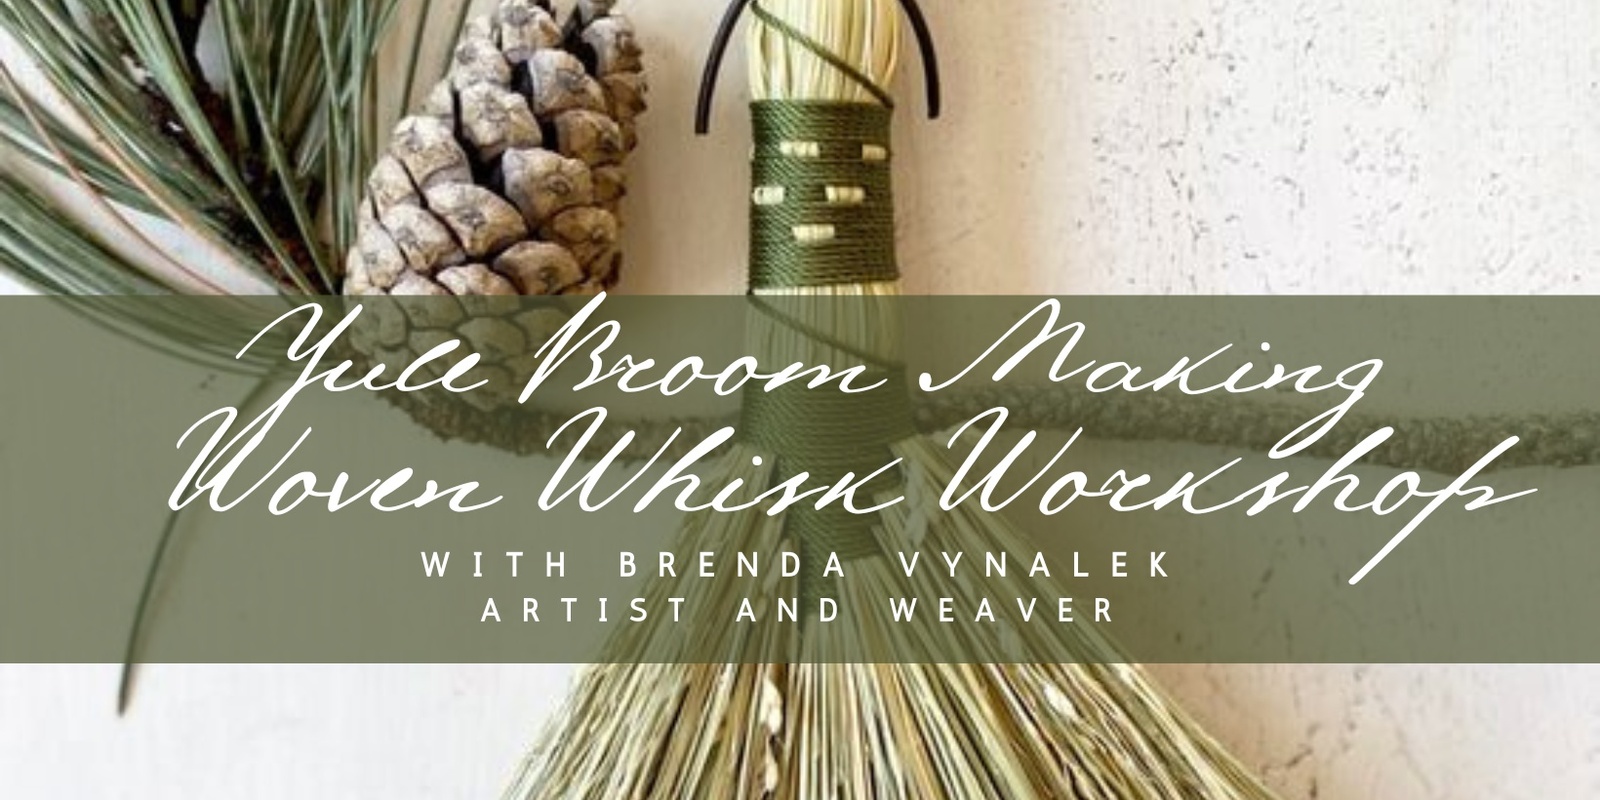 Banner image for Yule Broom Making: Woven Whisk Workshop